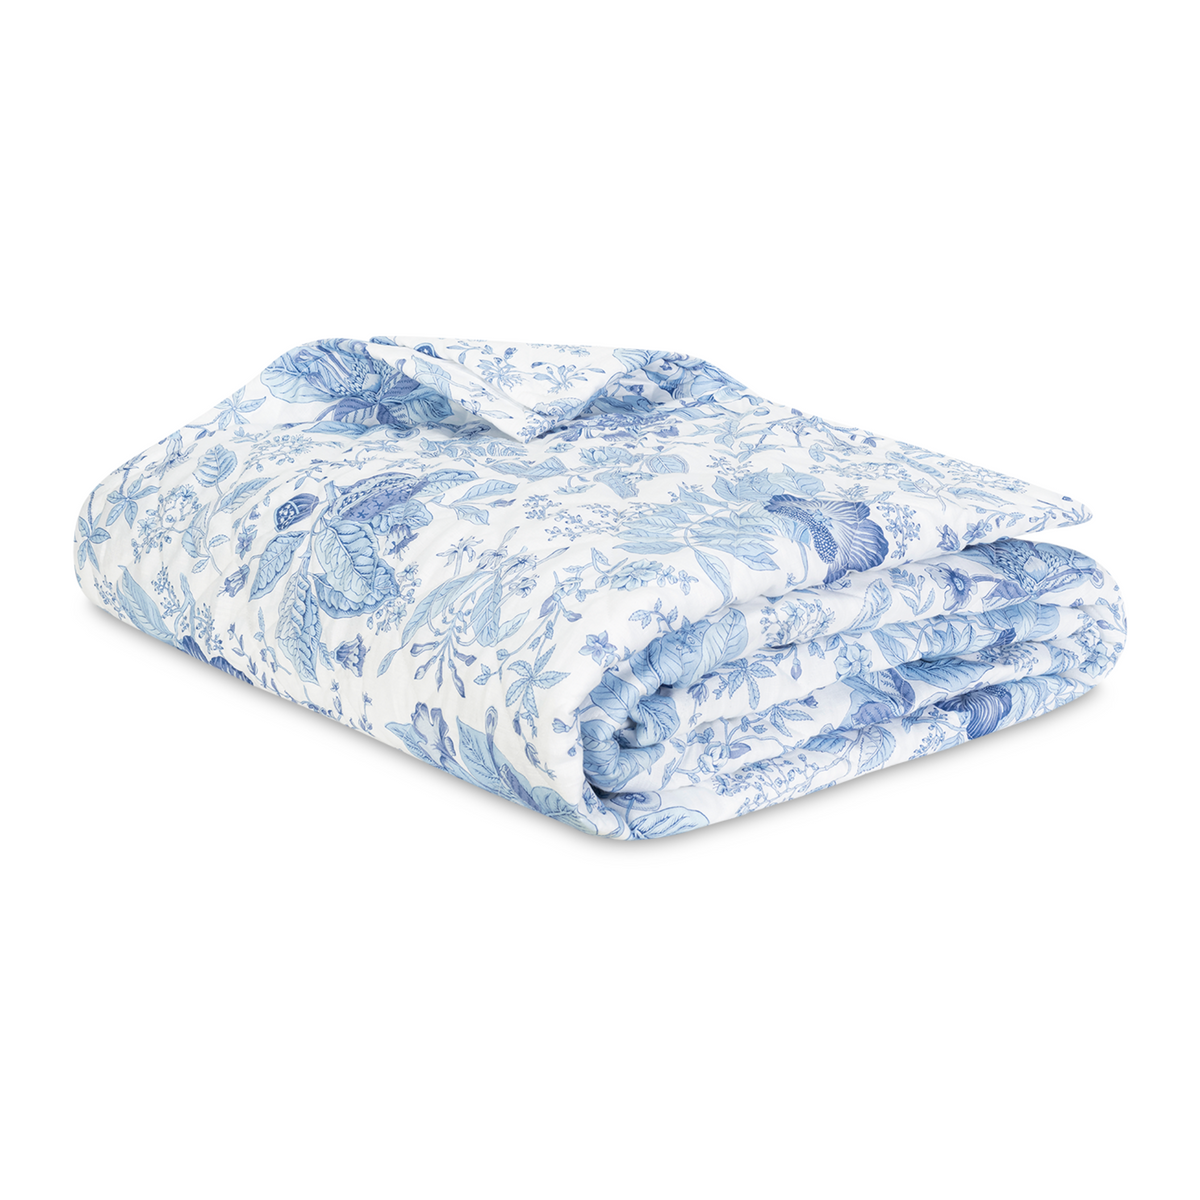 Quilt Fine Linen of Matouk Schumacher Pomegranate Linen Bedding in Porcelain Blue Color